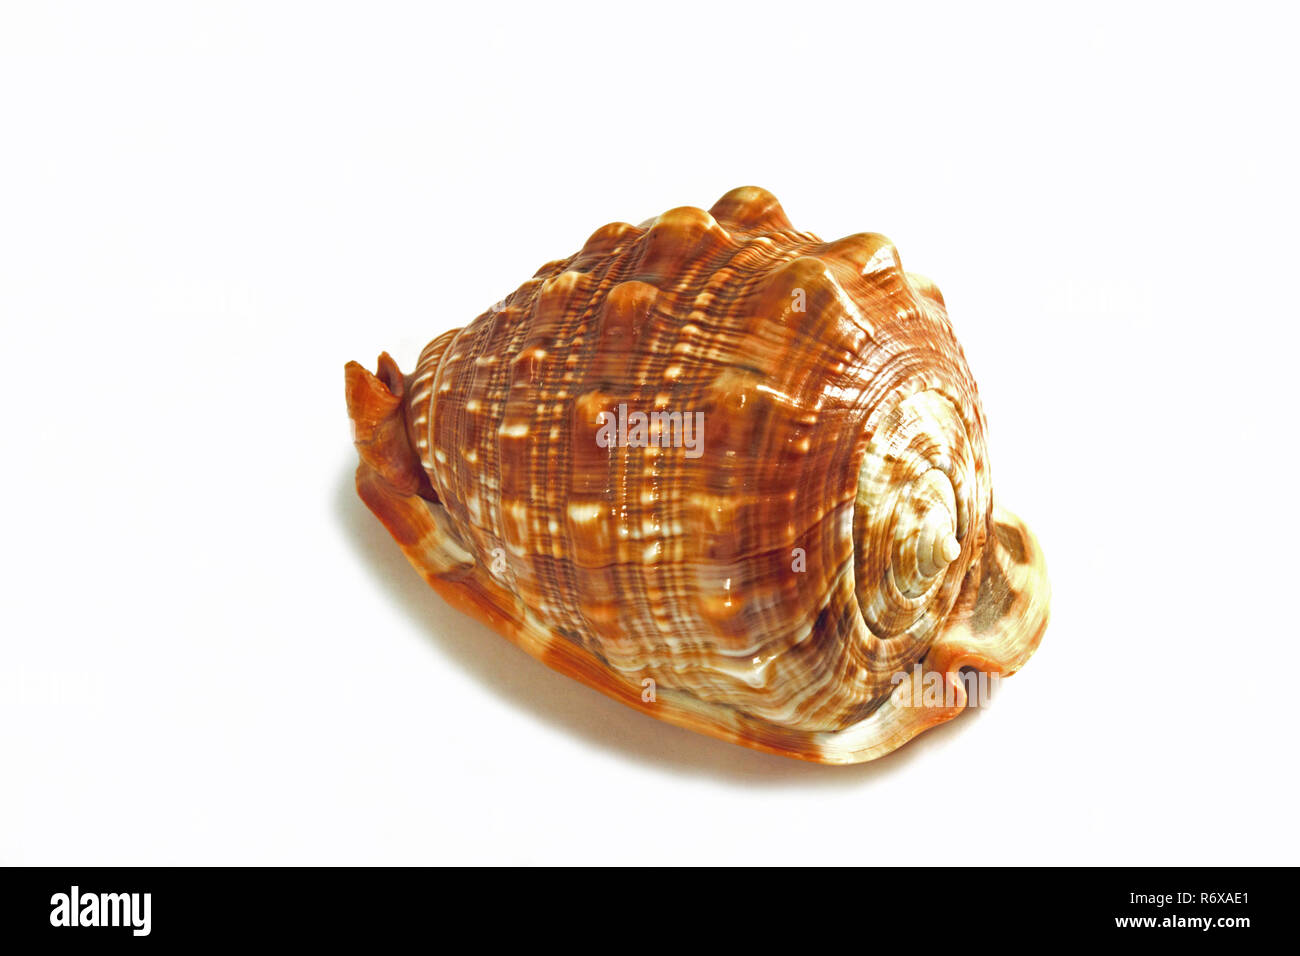 Le casque à cornes (Cassis cornuta) est l'un des plus grands d'escargots de mer. Ce 30 cm shell a été trouvé dans l'Indian Pacific. Photographie studio isolé sur w Banque D'Images